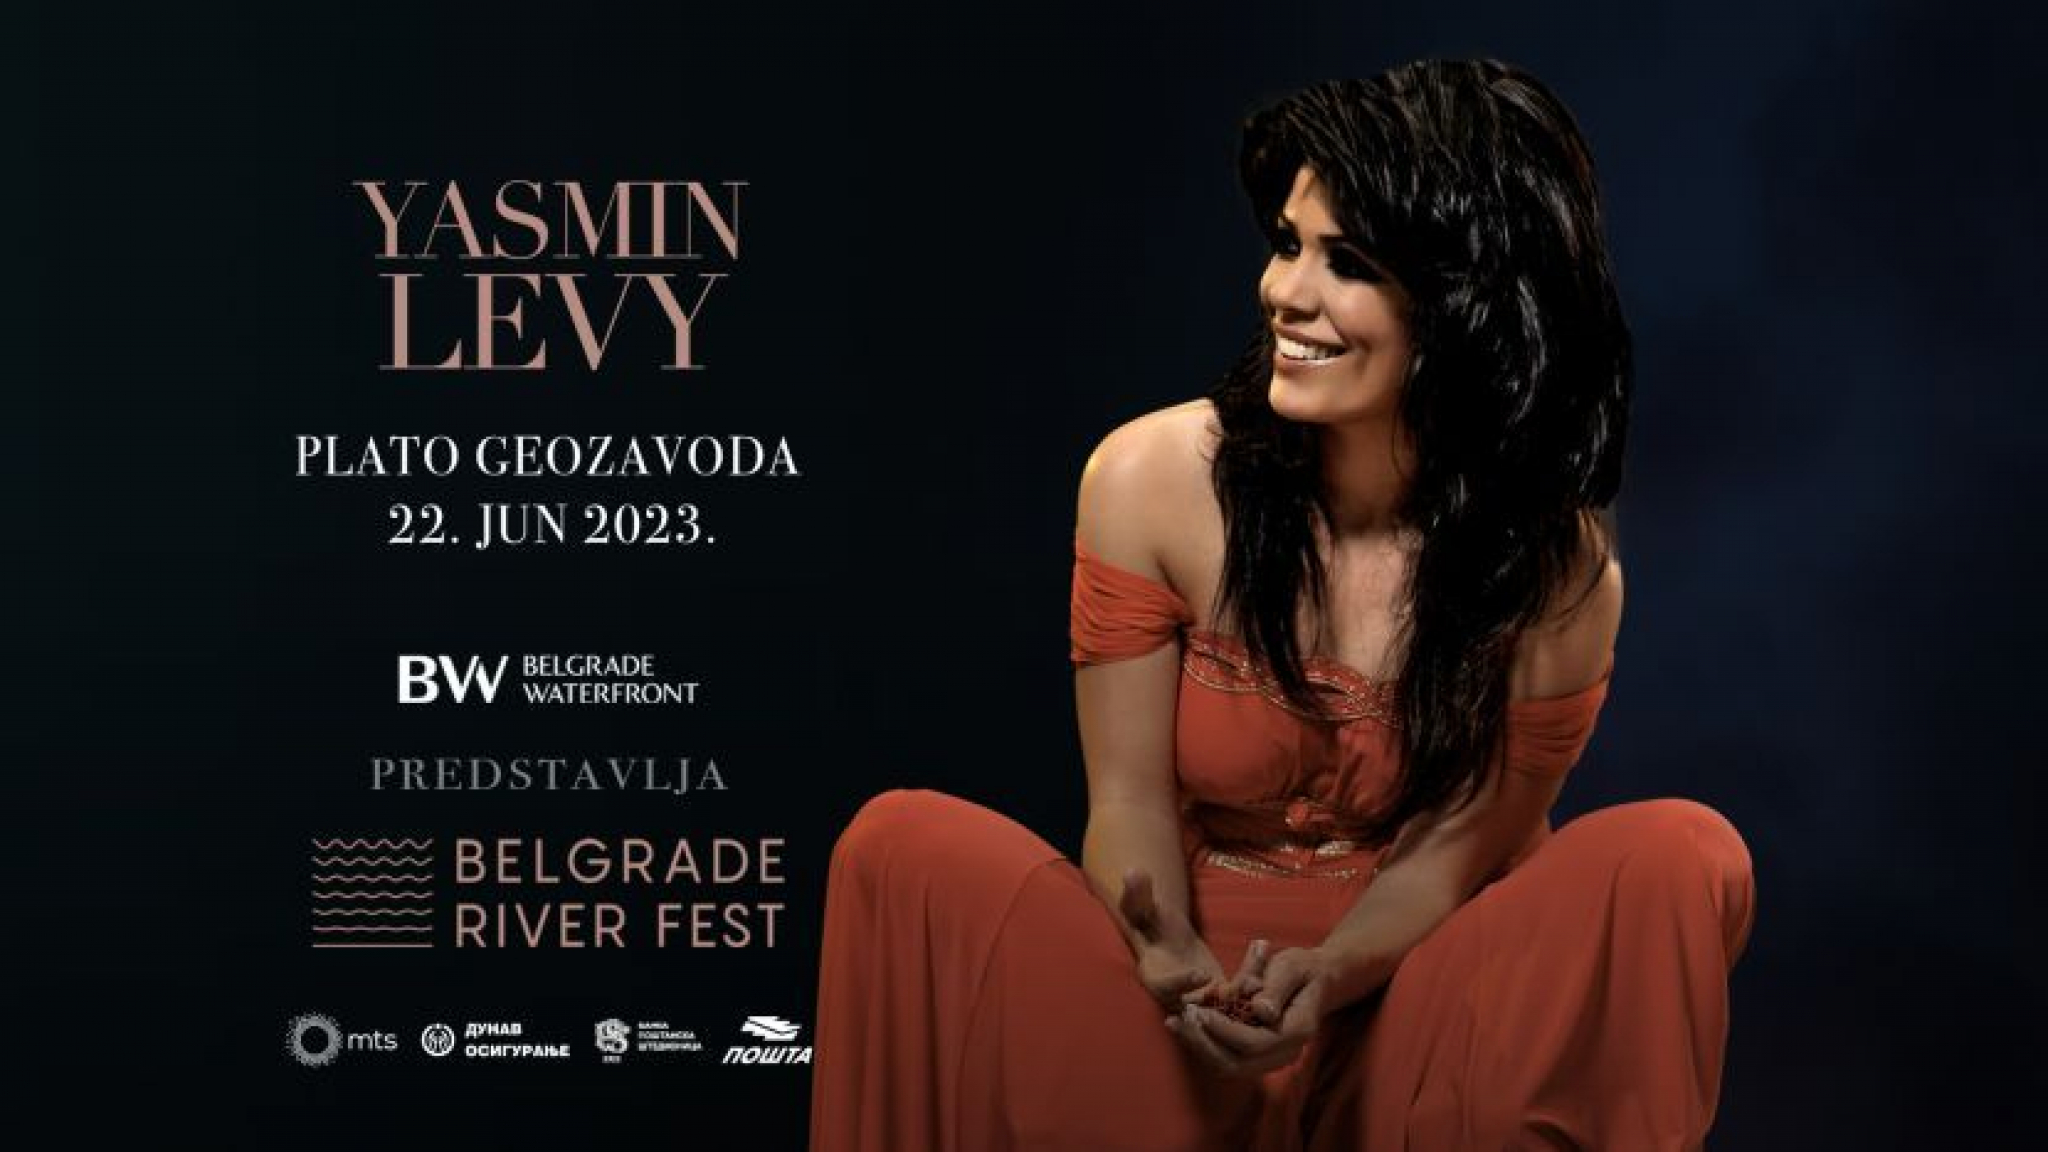 BELGRADE RIVER FEST Koncerti velikana svetske muzičke scene 21. i 22. juna u Beogradu